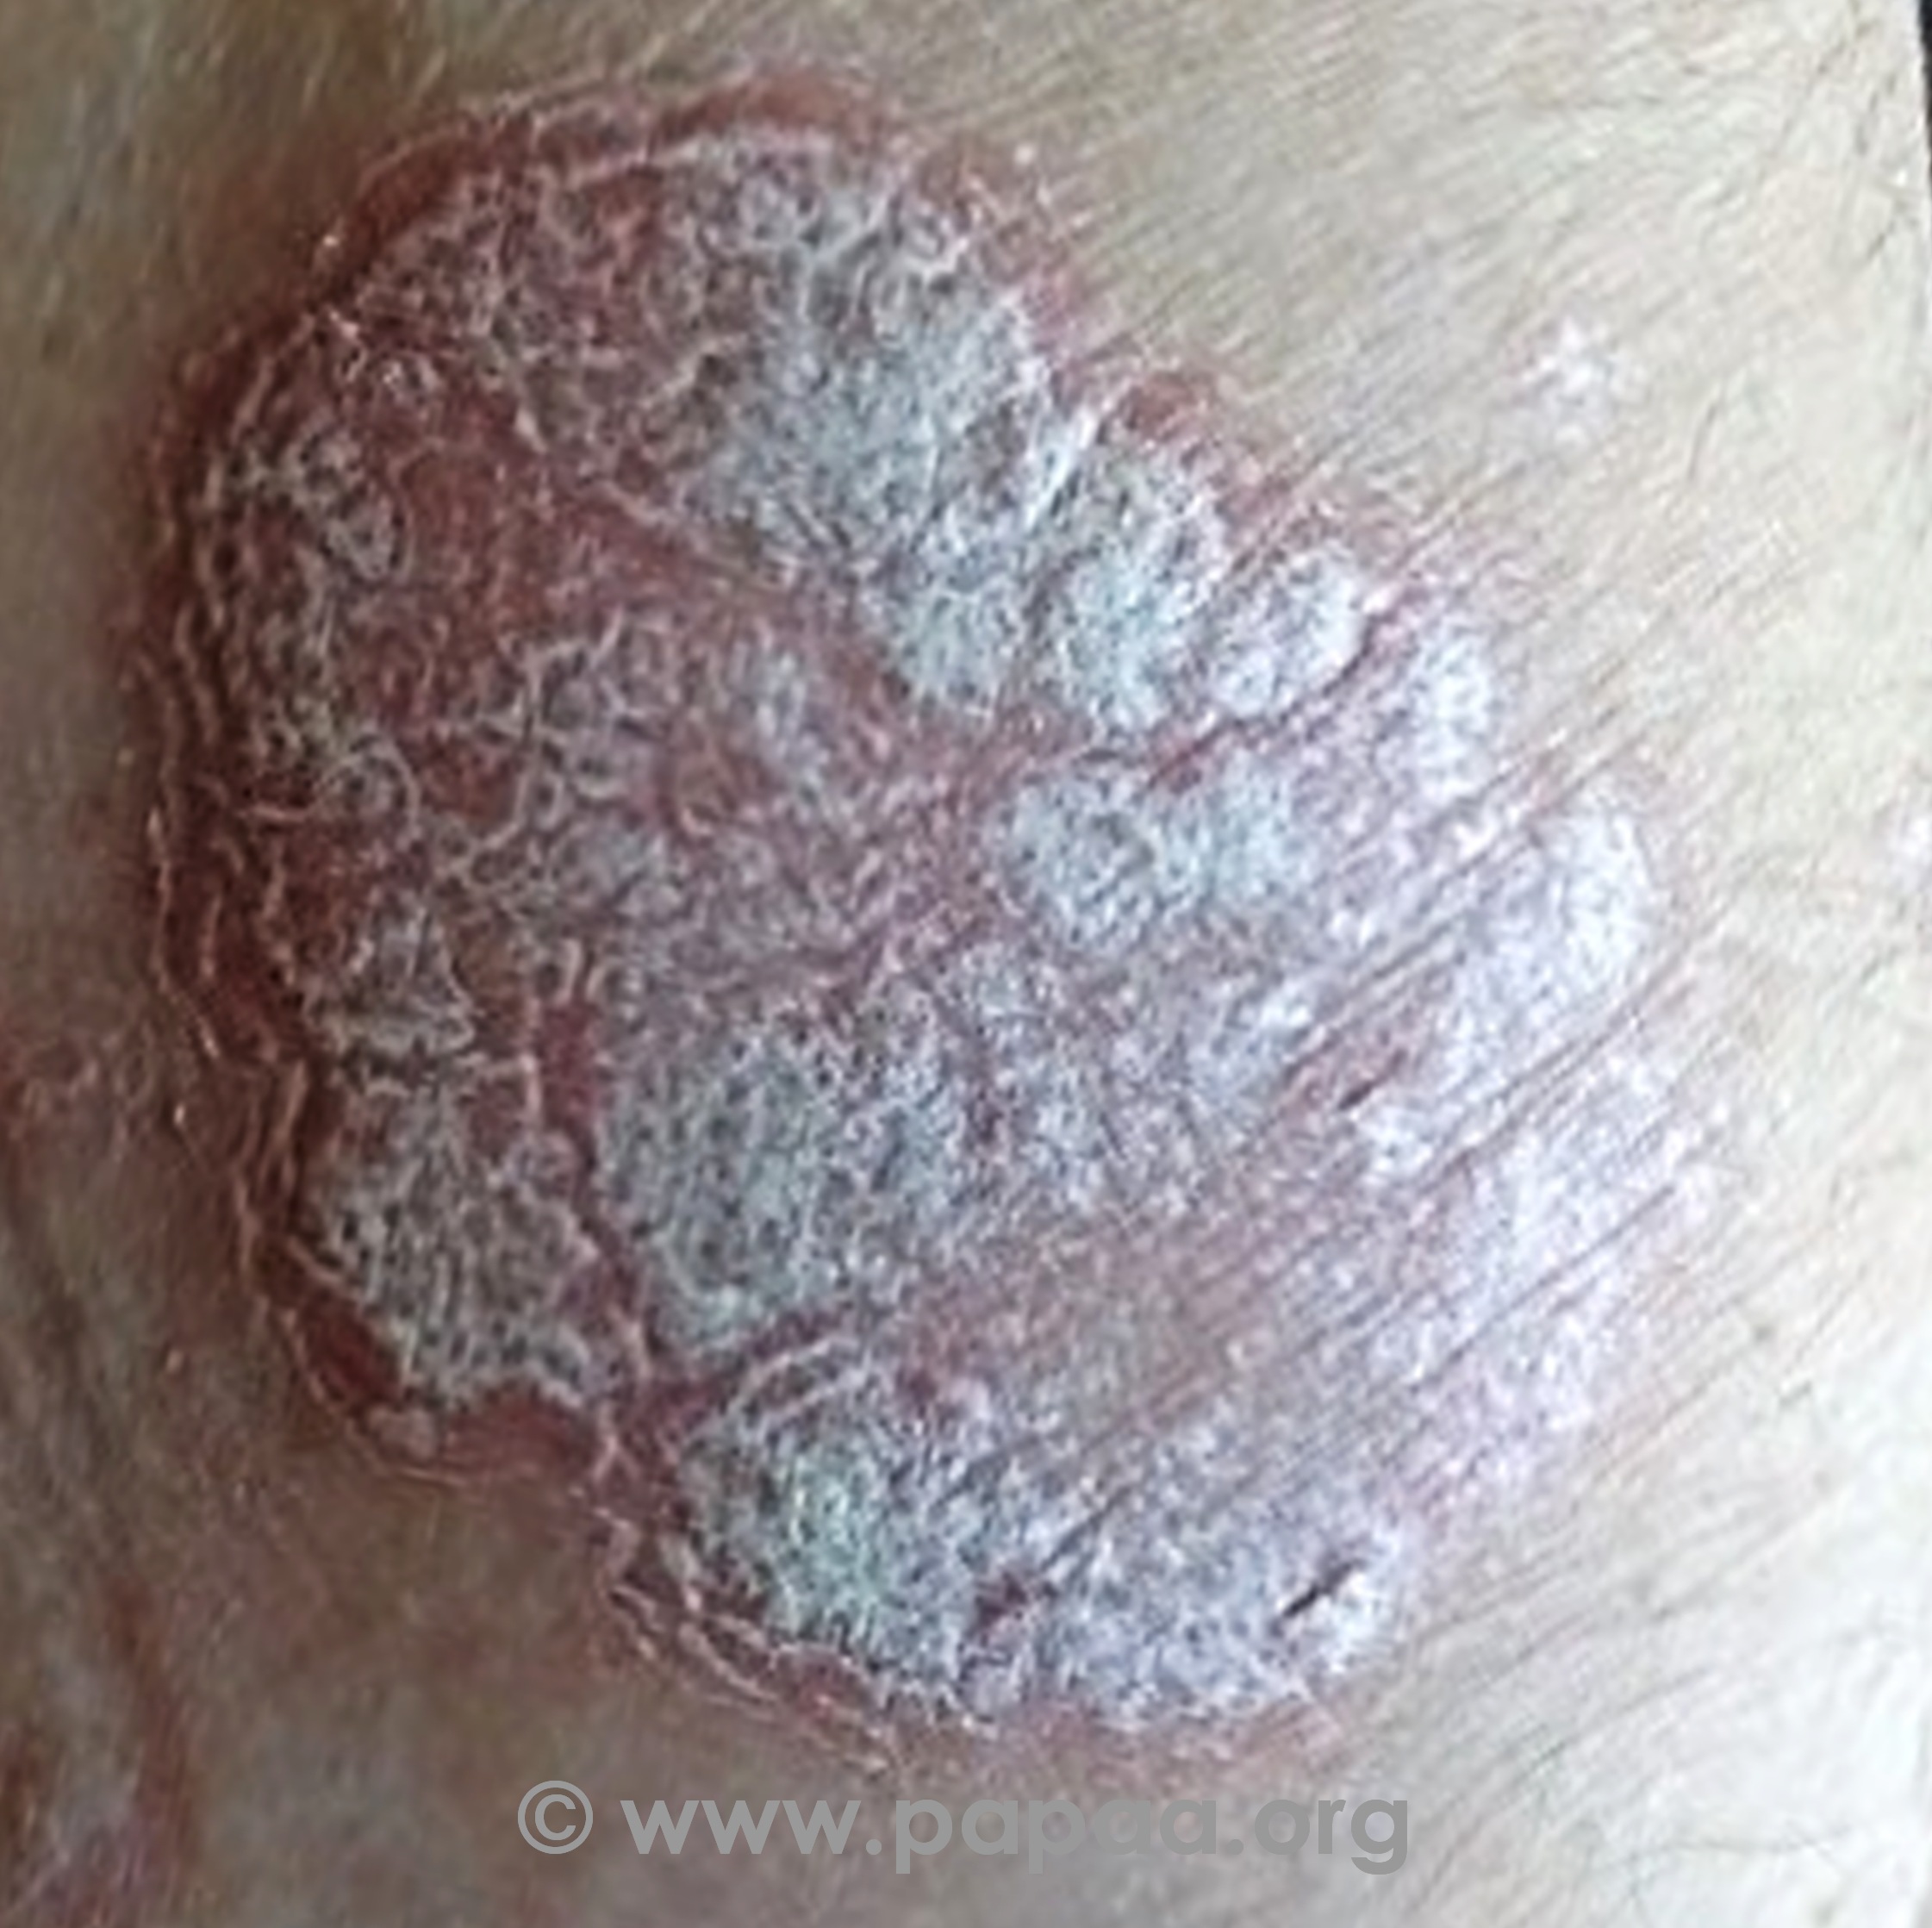 Patch clear skin from pikkelysömör